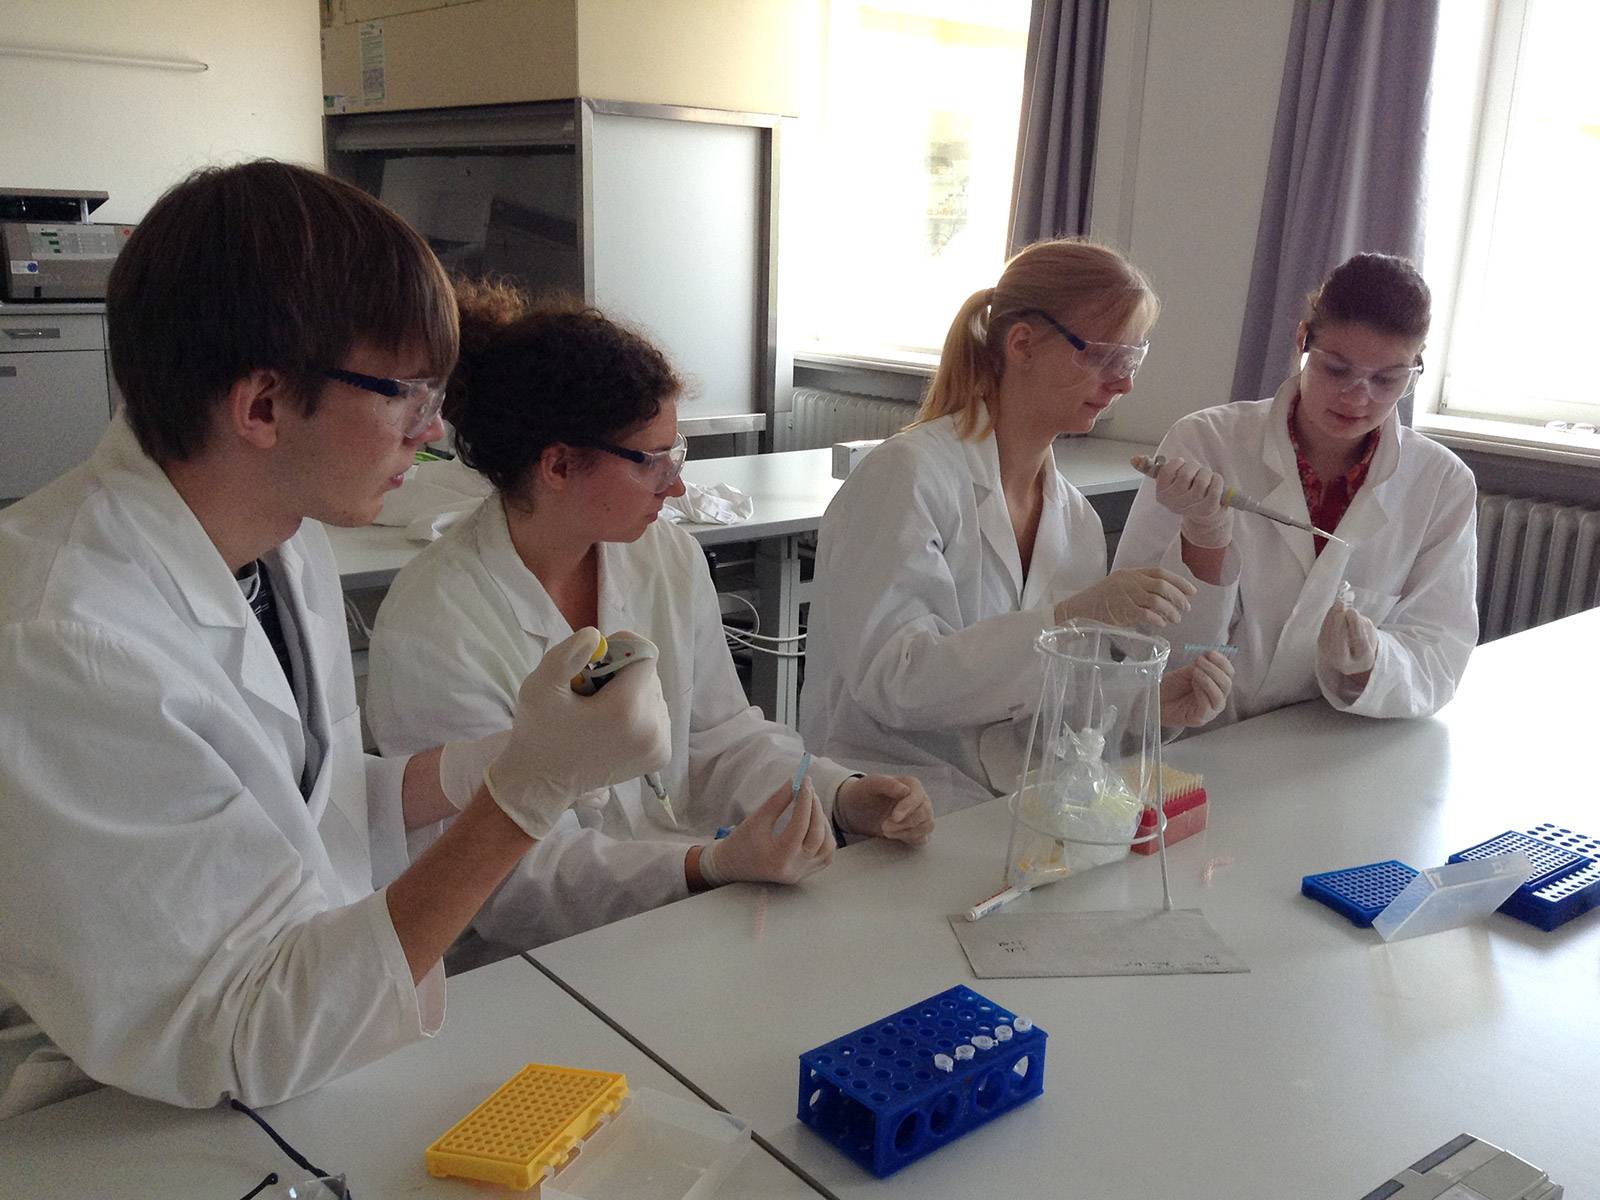 Ein Schüler und drei Schülerinnen in weißen Kitteln und mit Schutzbrillen arbeiten mit Pipetten in einer Laborumgebung